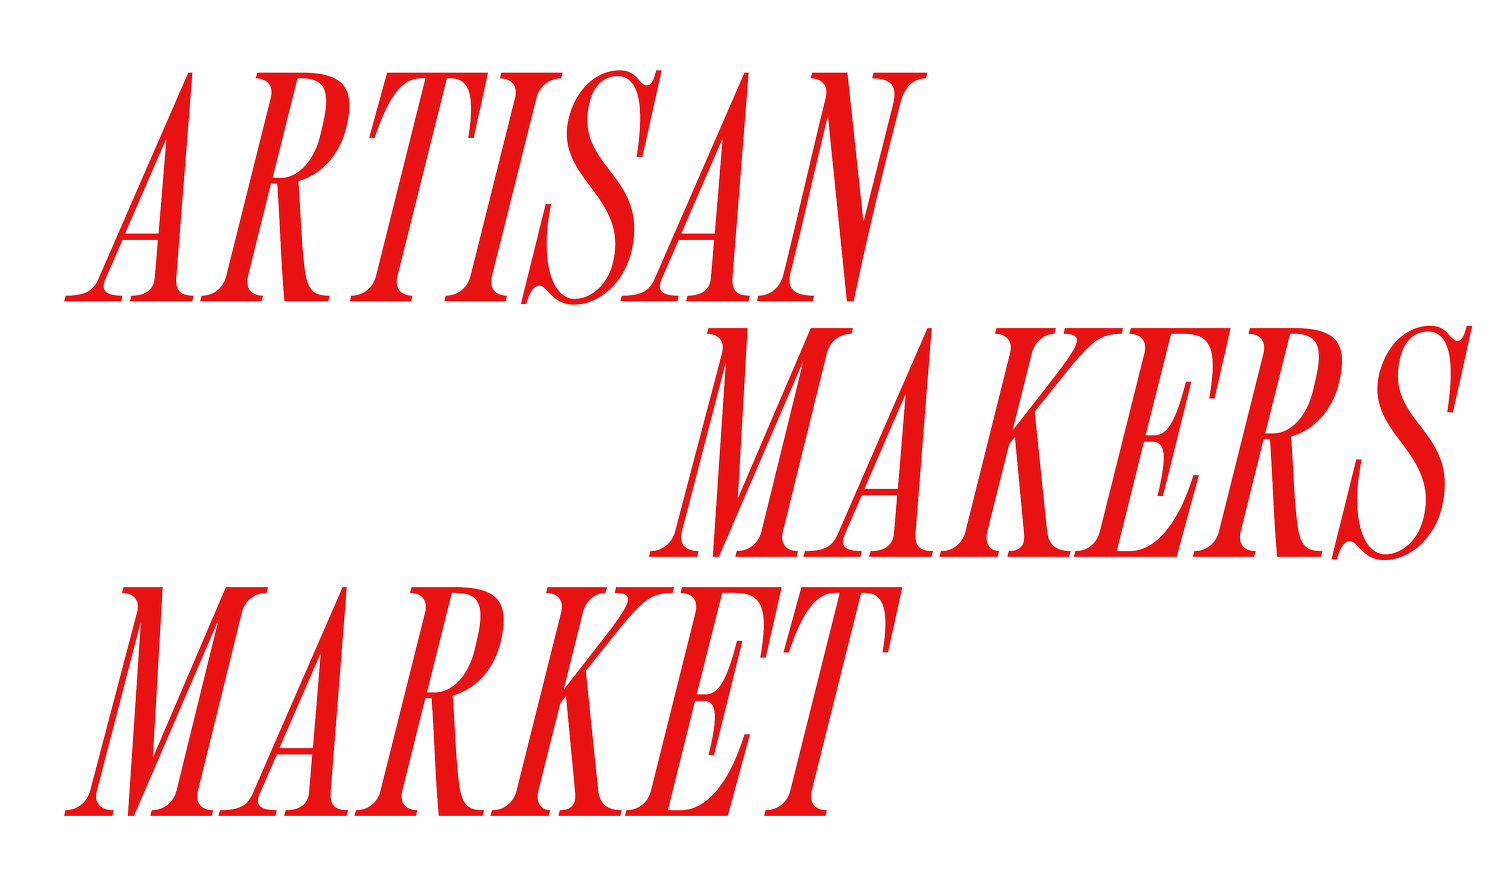 Artisanal Makers Market